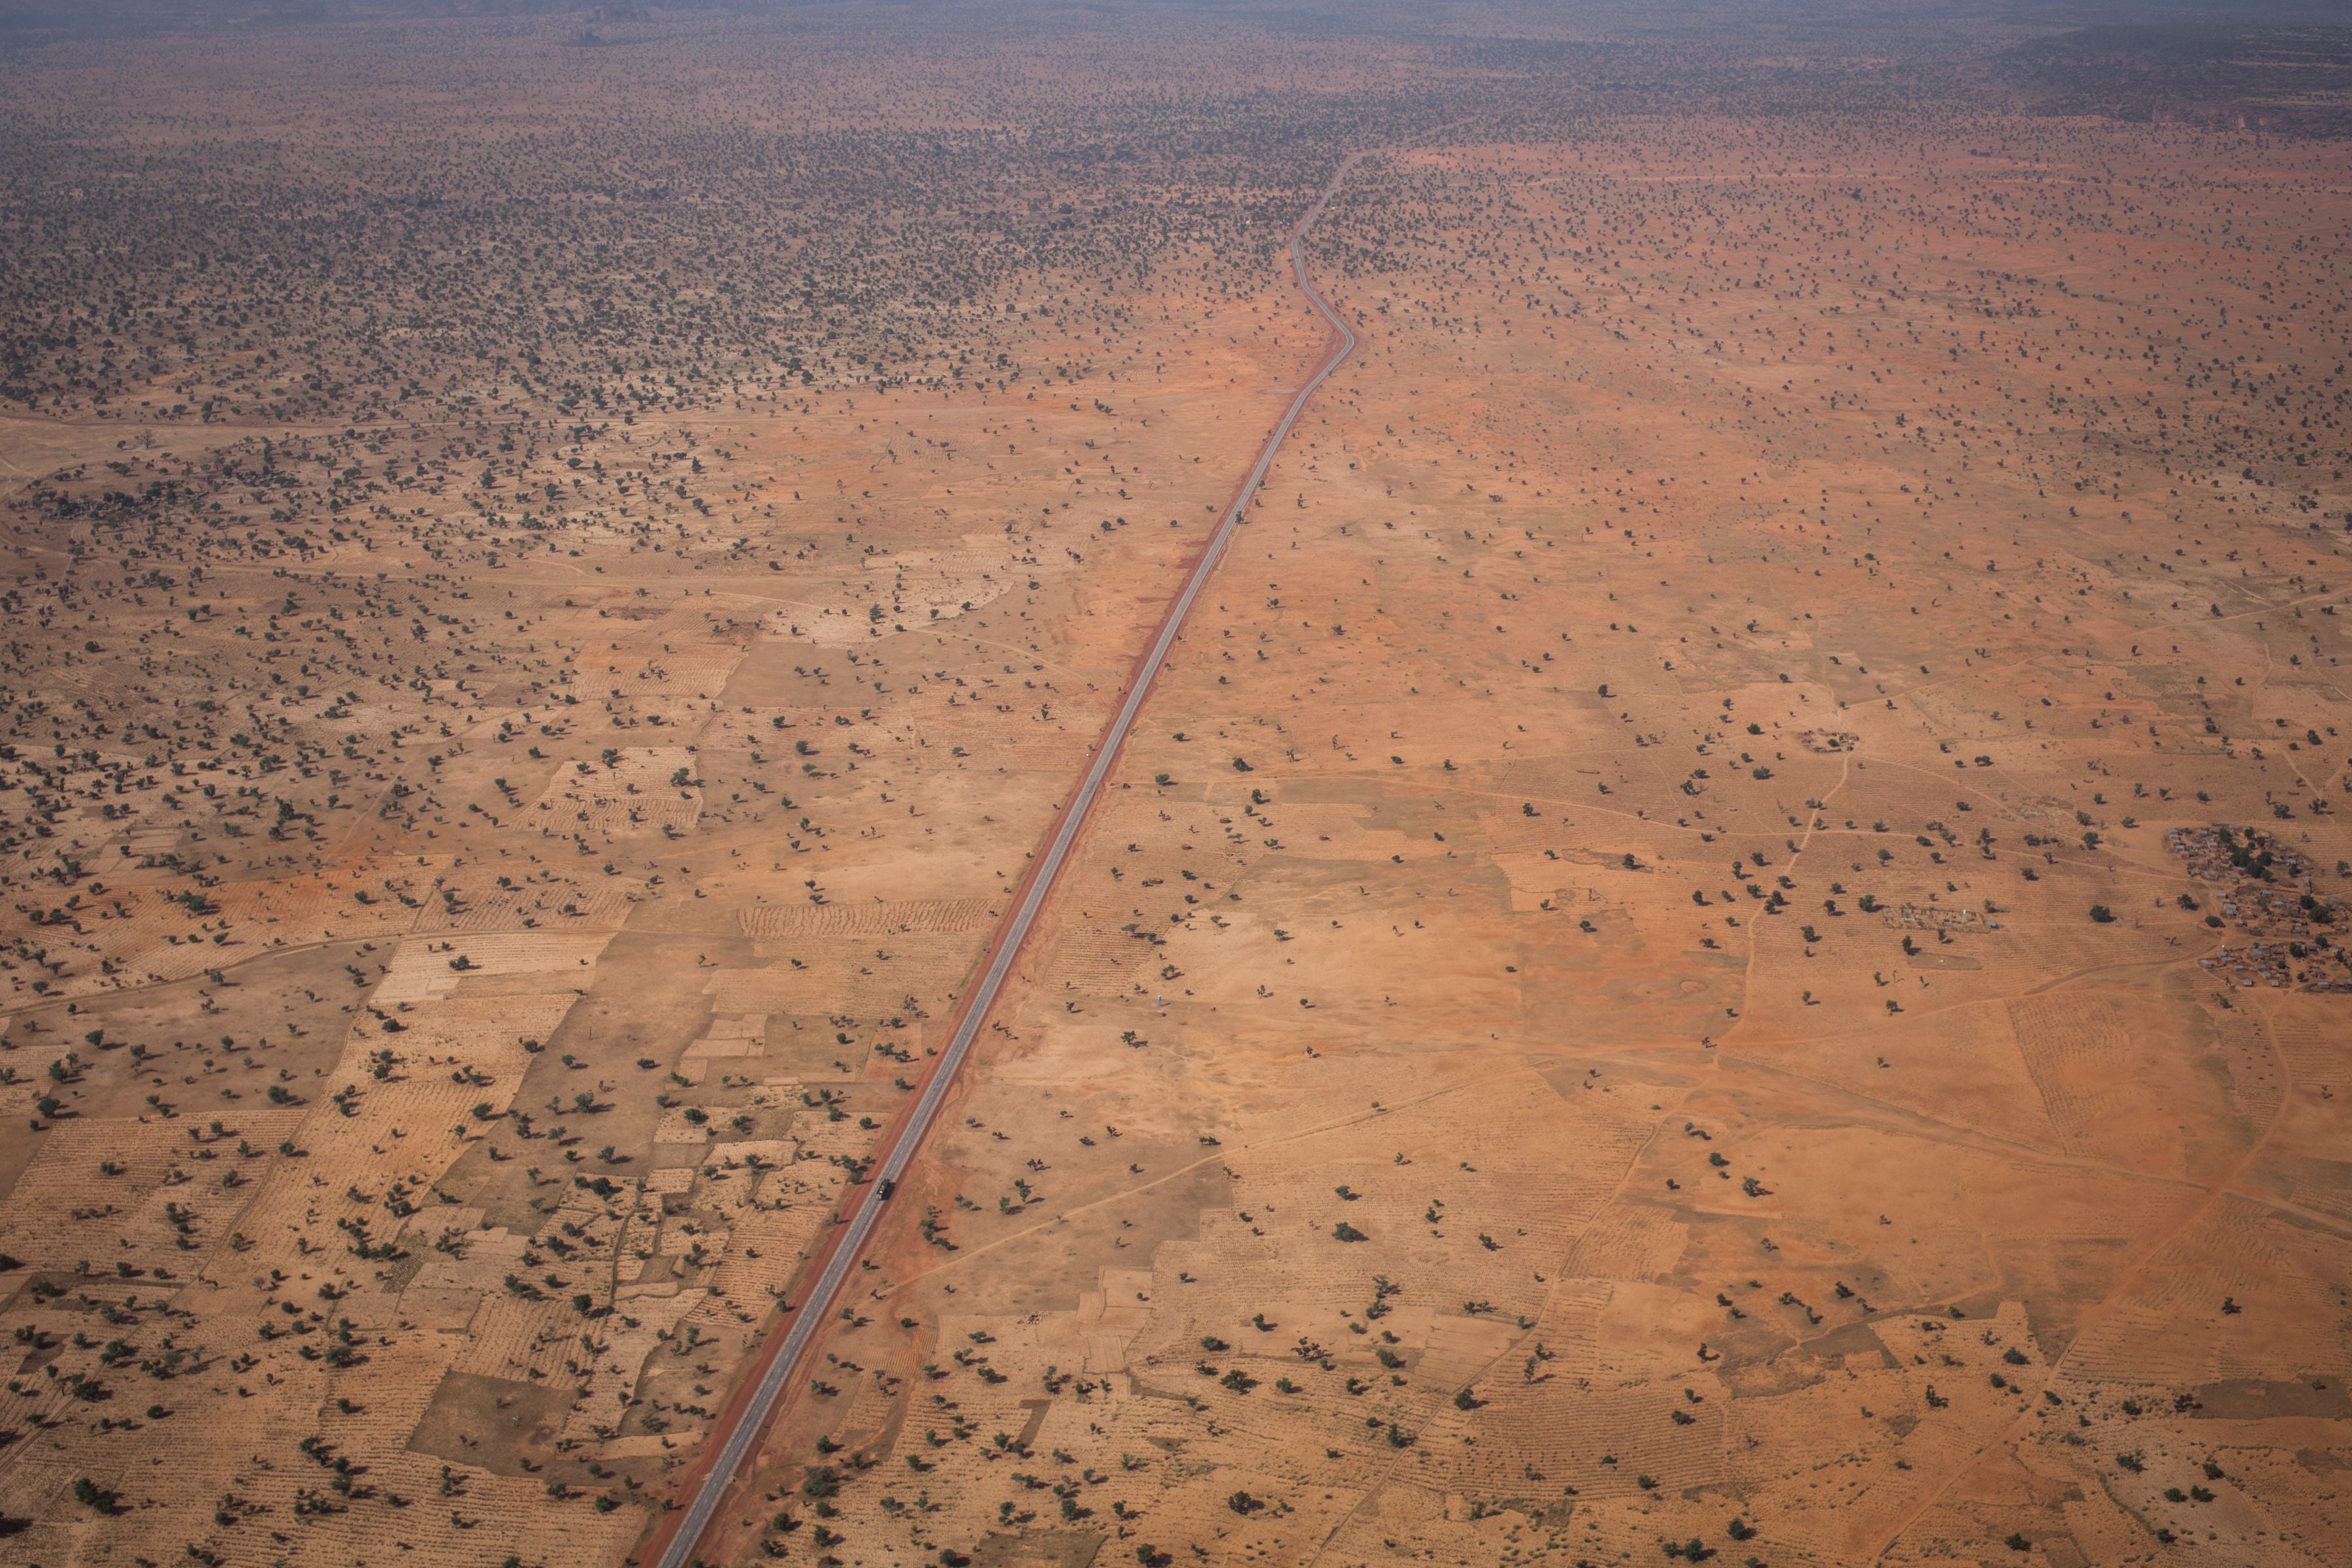 Une route allant du Mali au Burkina Faso